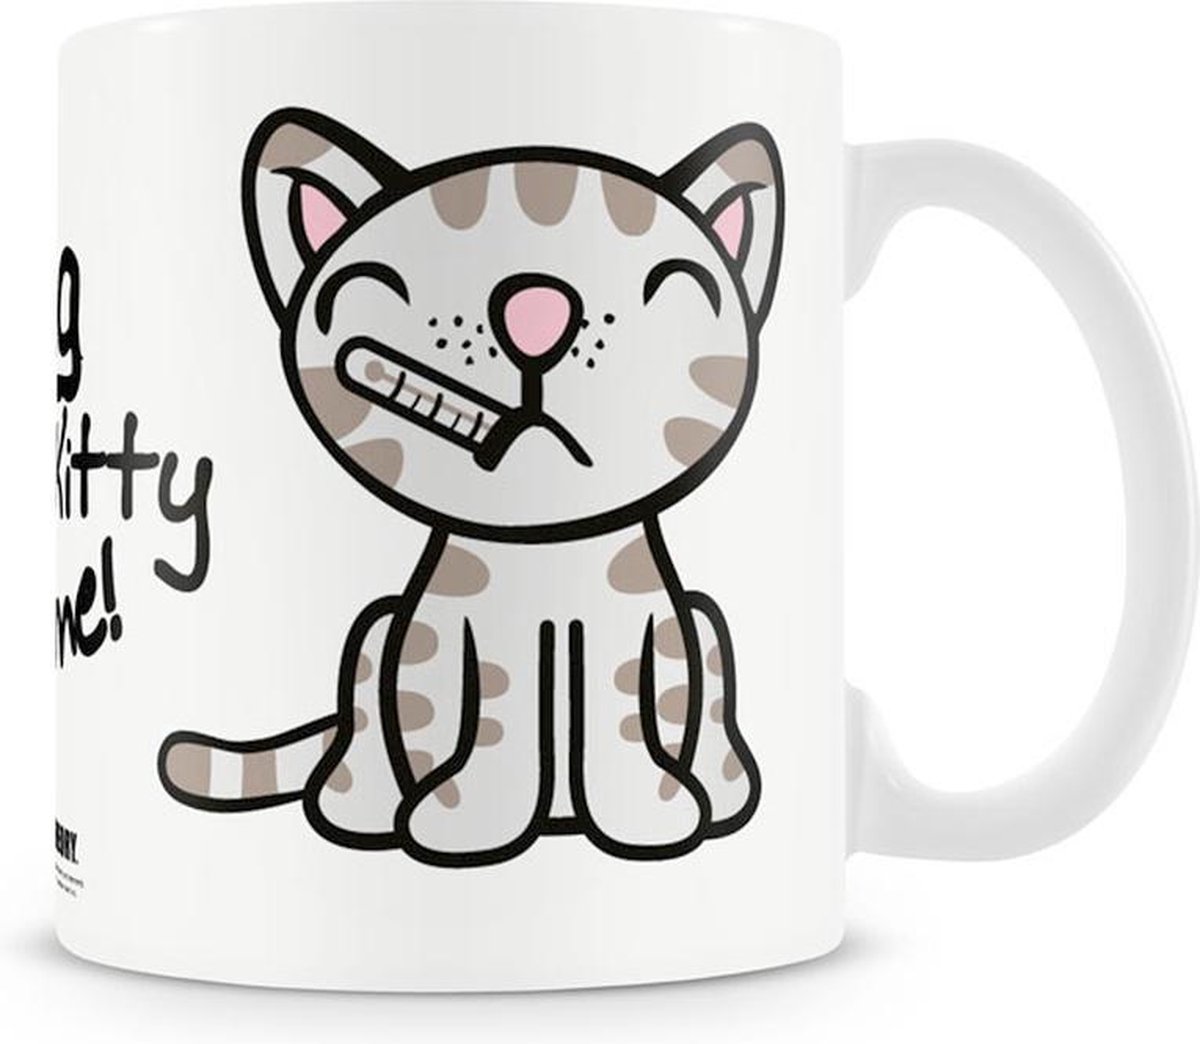 BIG BANG THEORY - Mug - Sing Soft Kitty to me